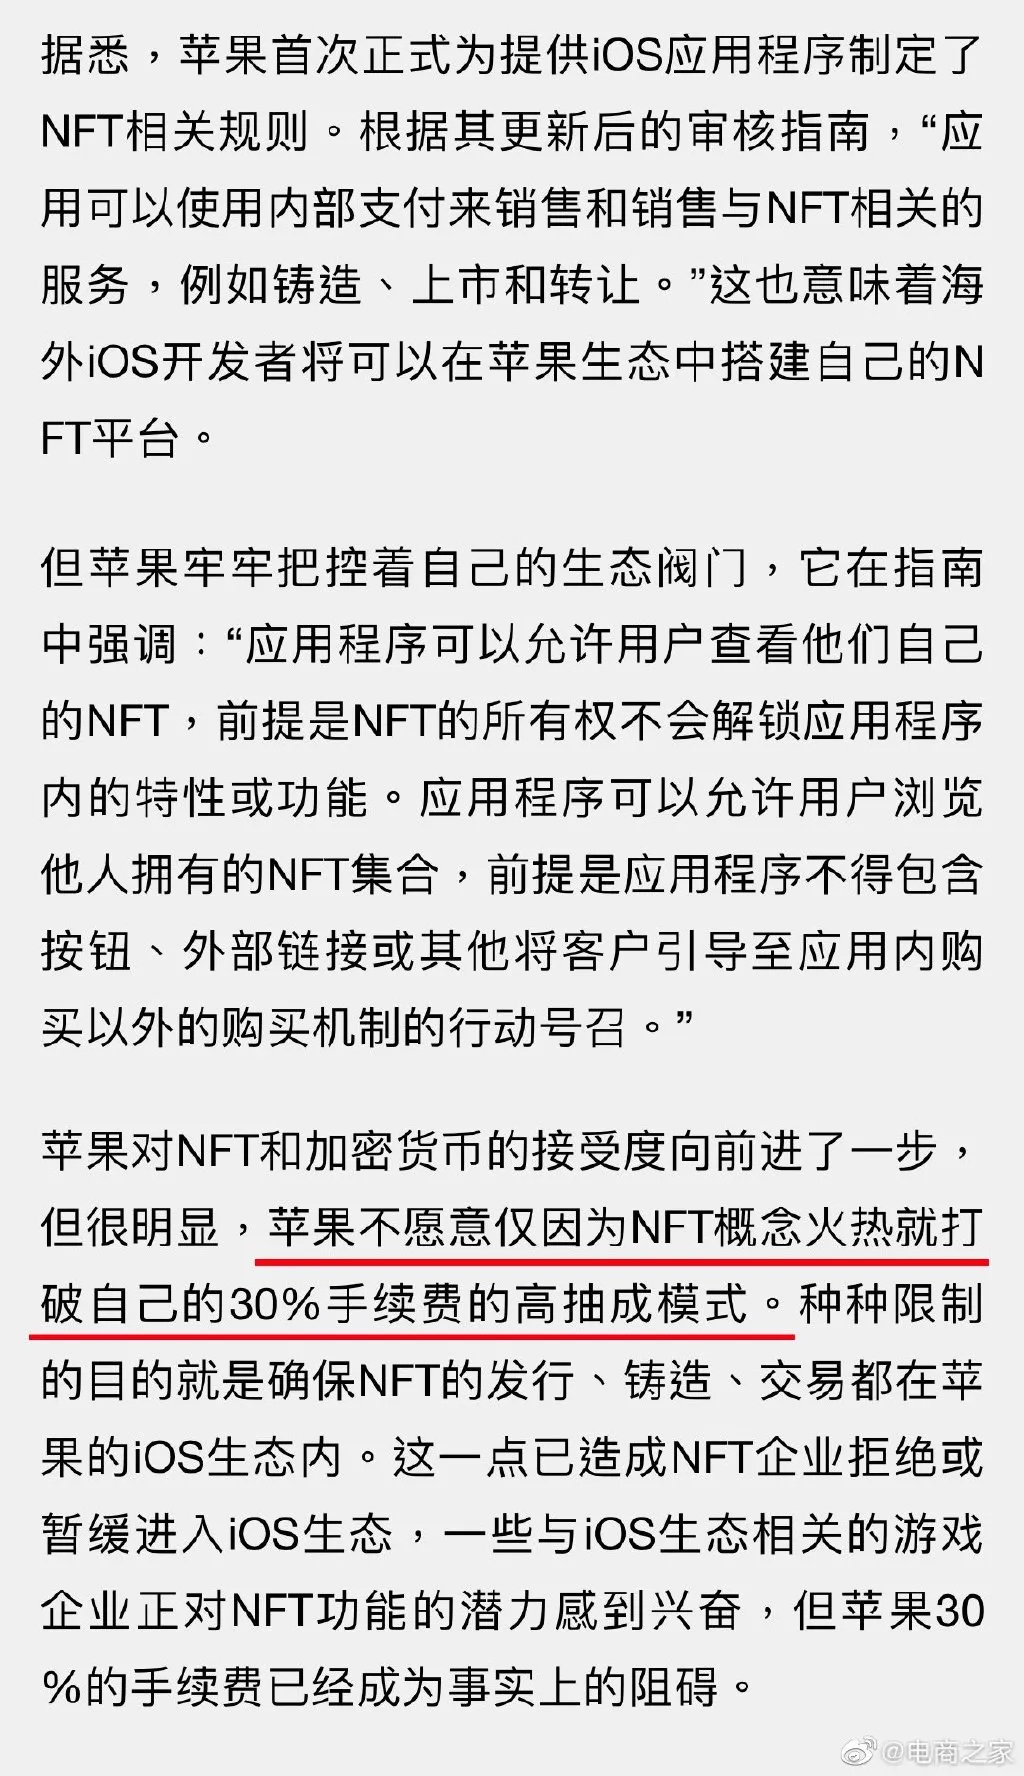 苹果正式允许iOS发行NFT nft图片 nft交易平台